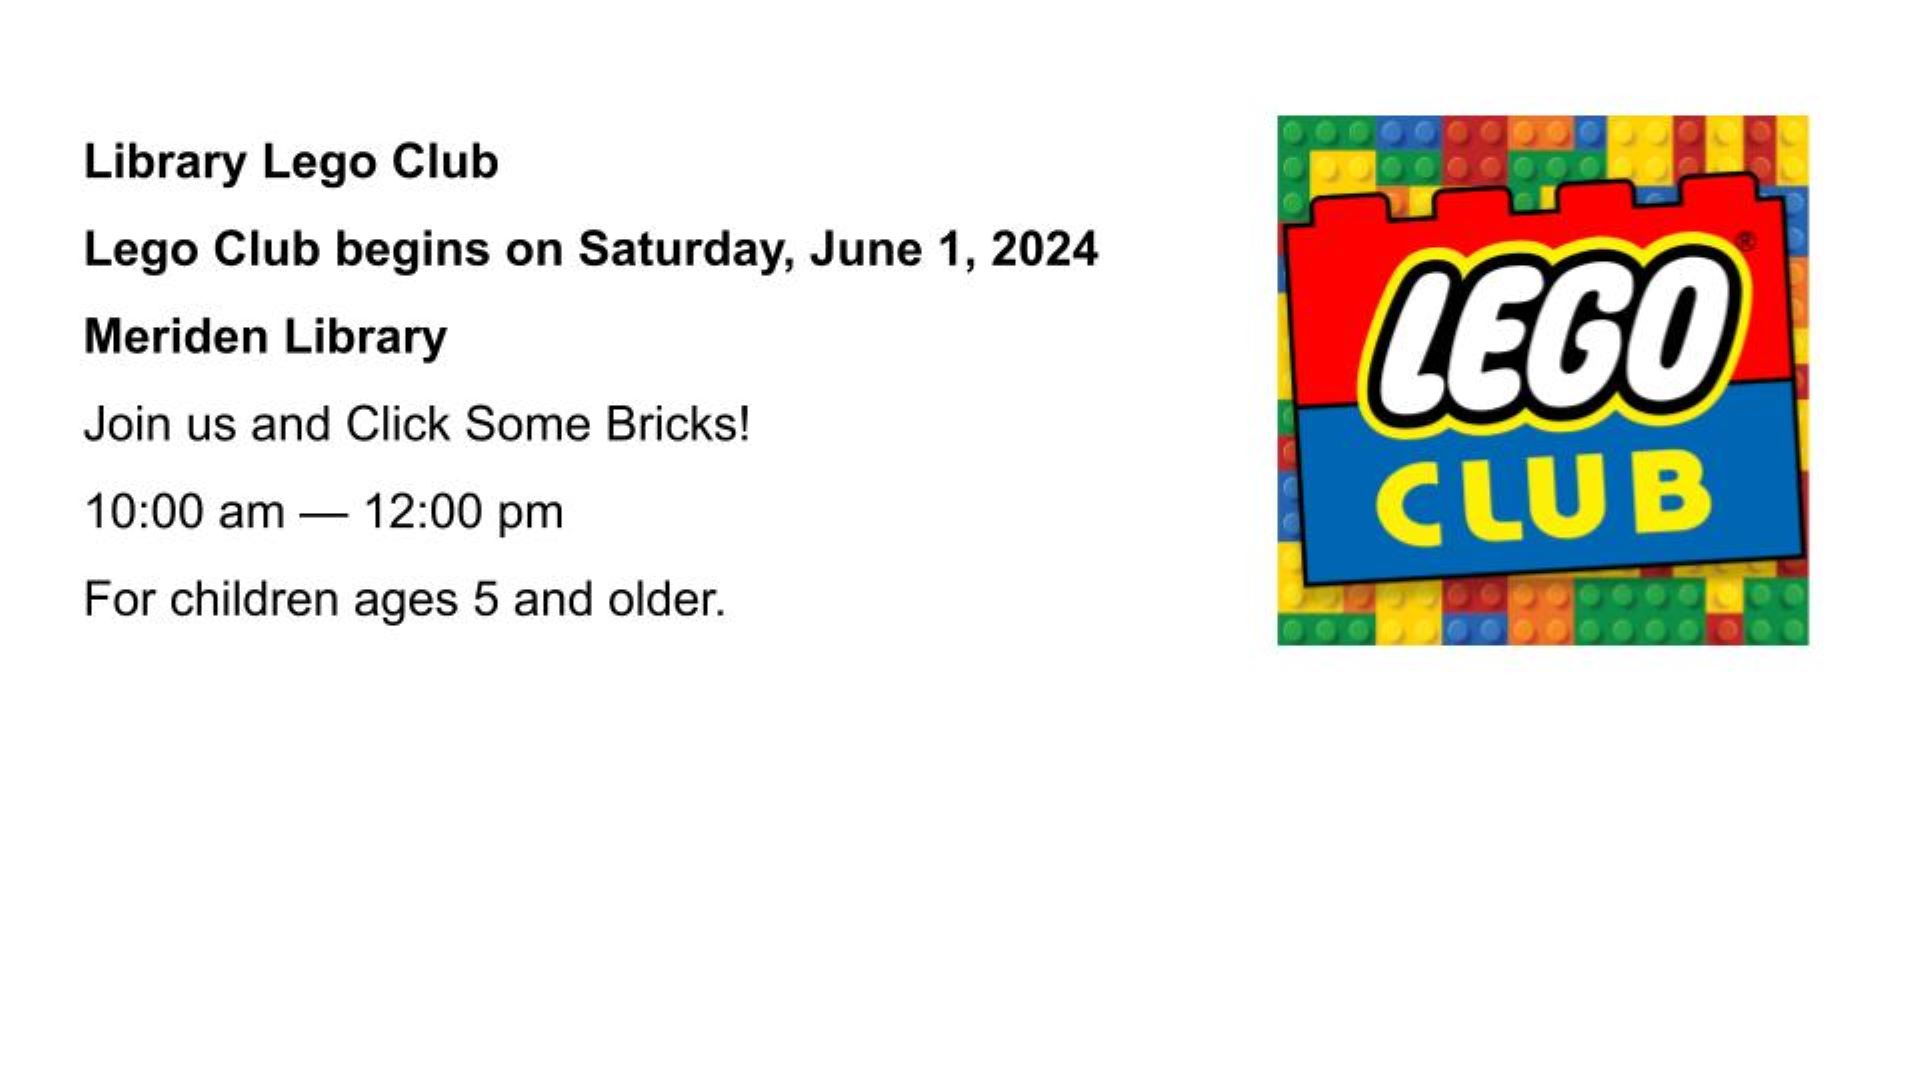 Library Lego Club